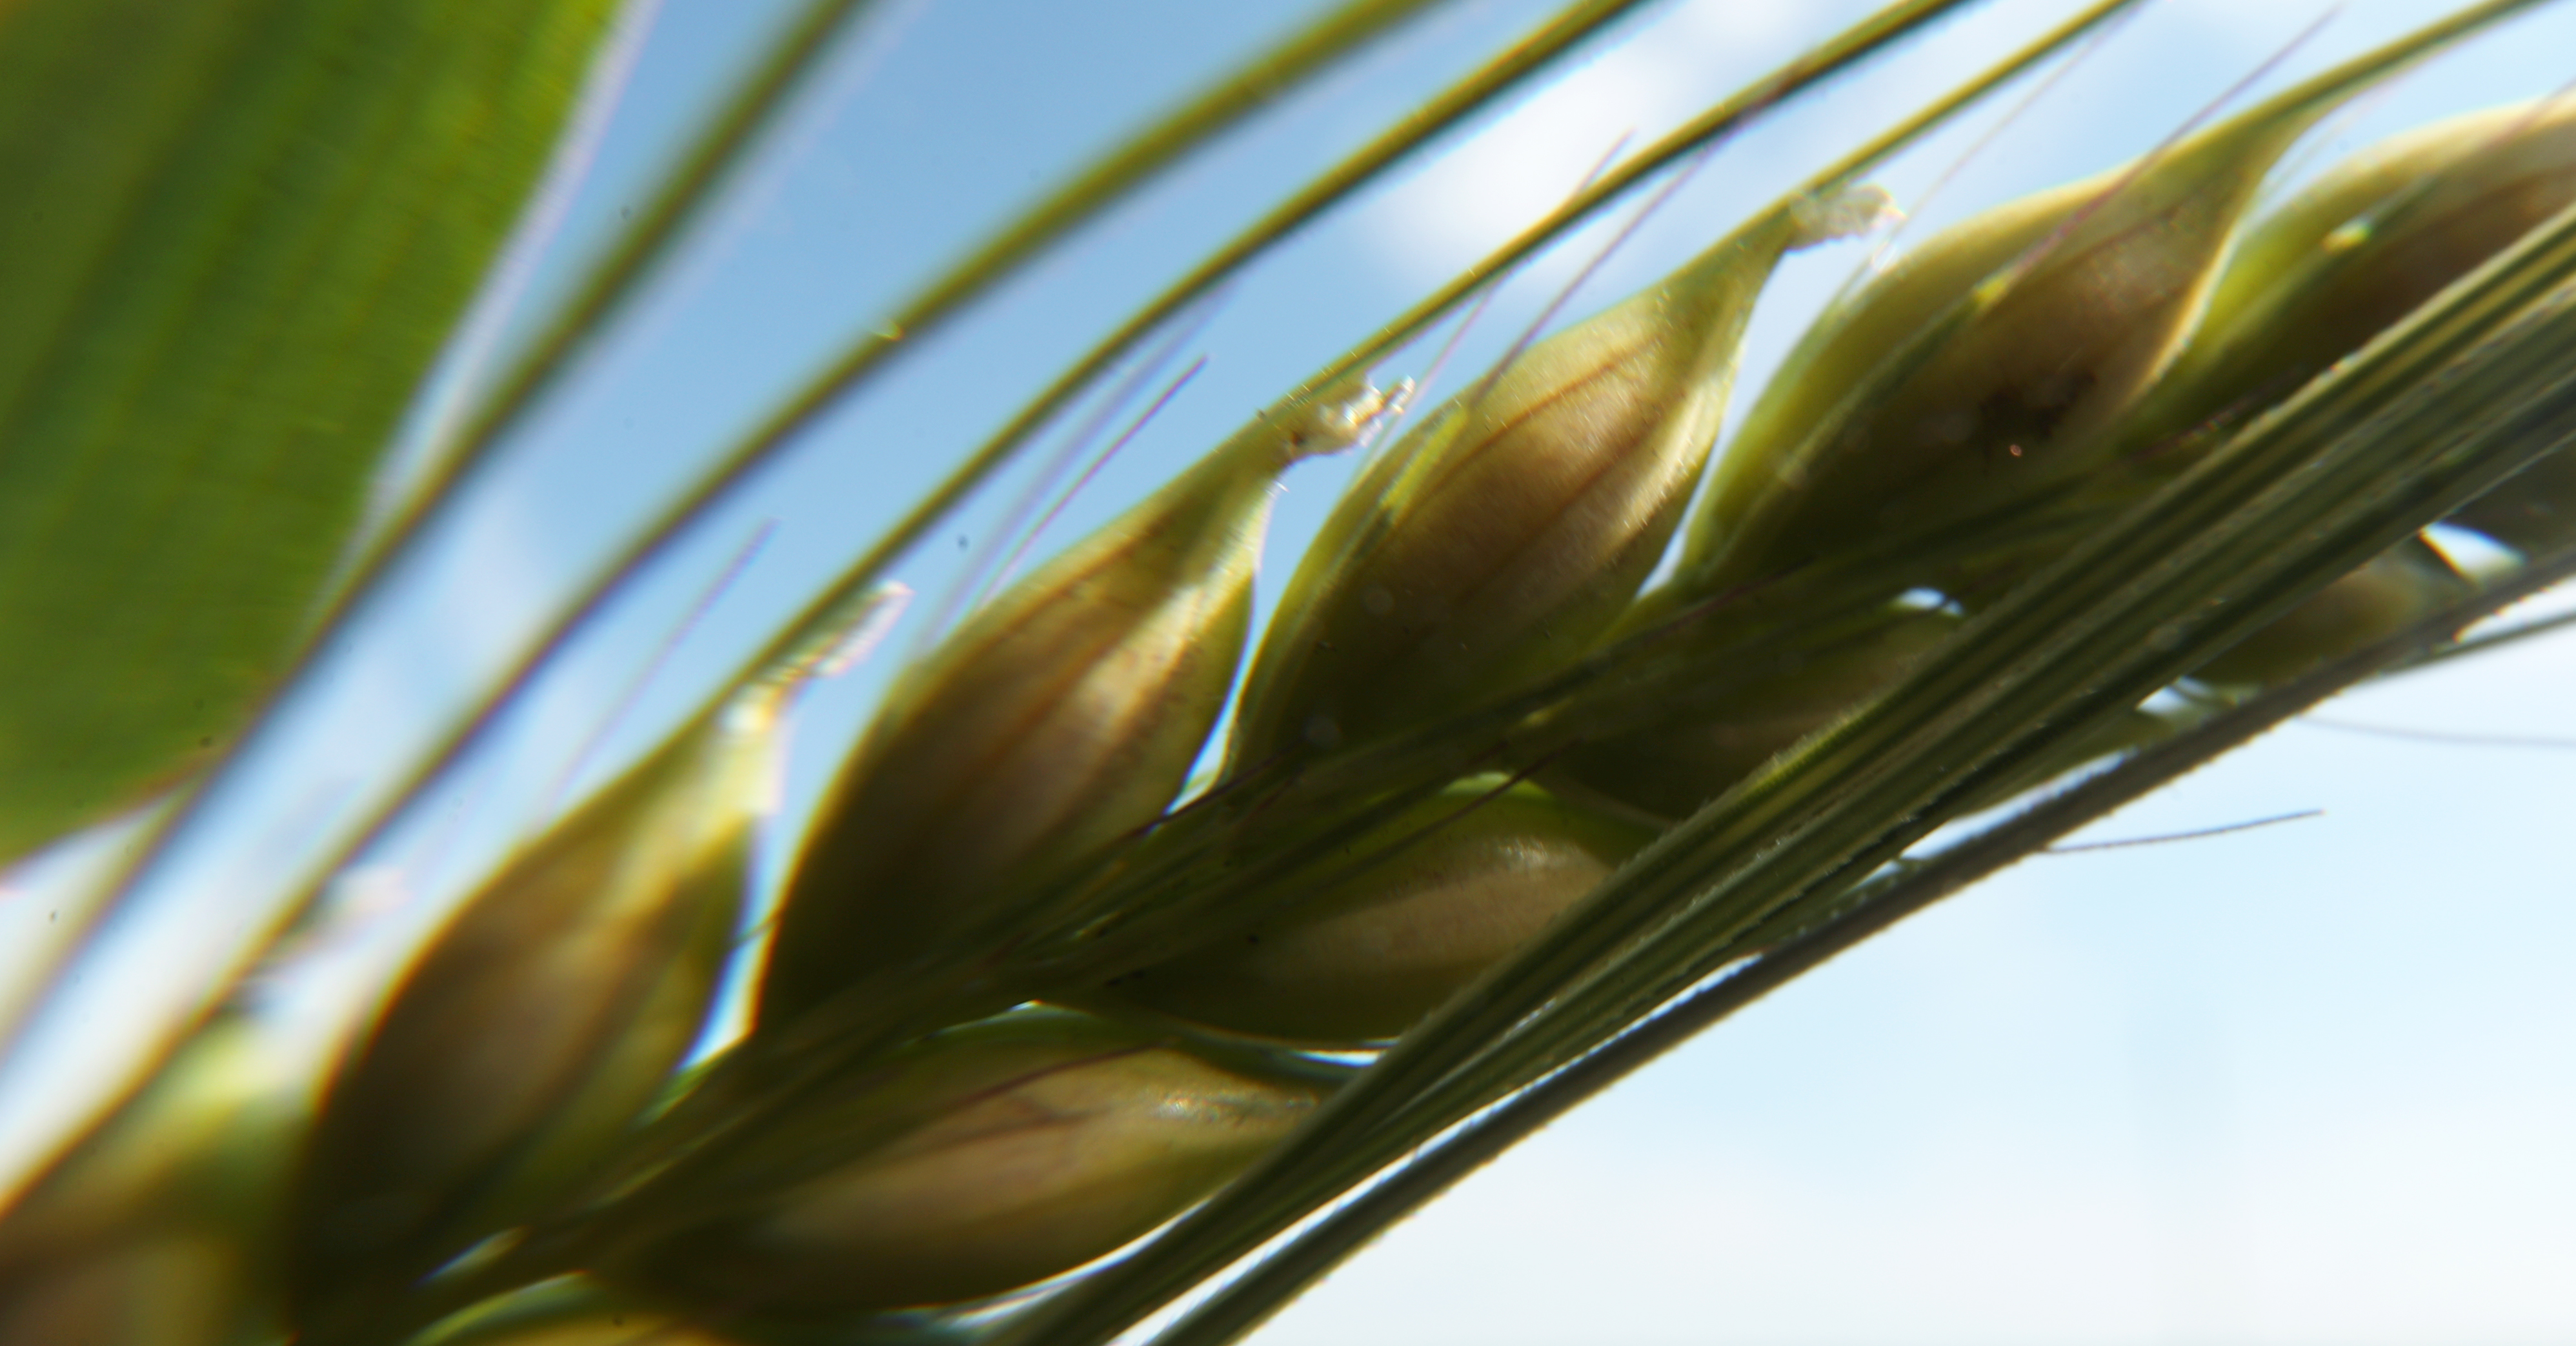 Урожайность зерна и сои в Саратовской области на 20% выше среднемноголетних значений за последние 5 лет